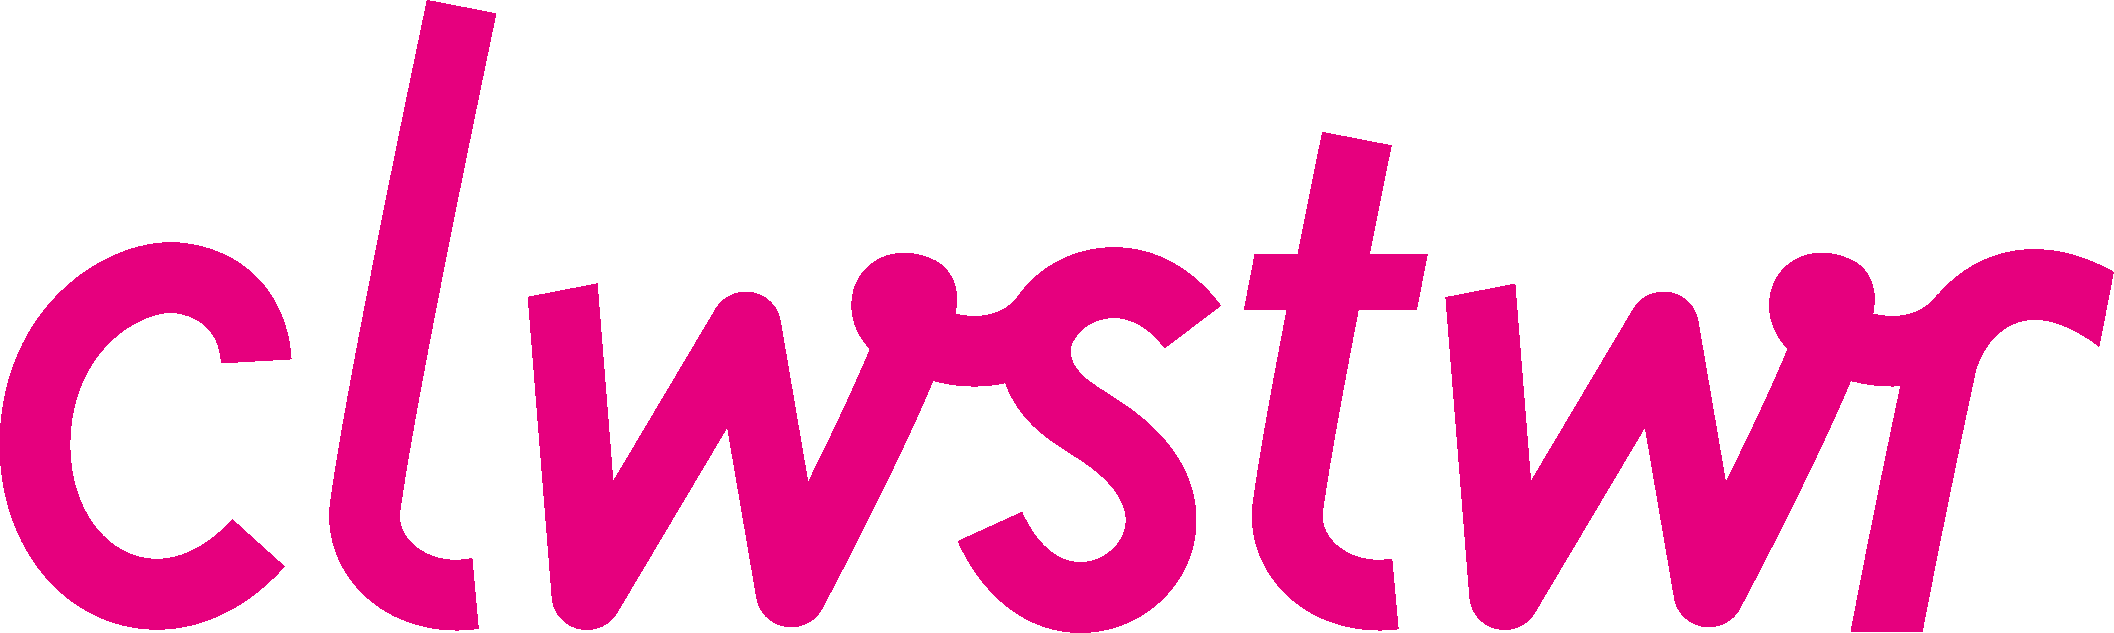 clwstwr logo